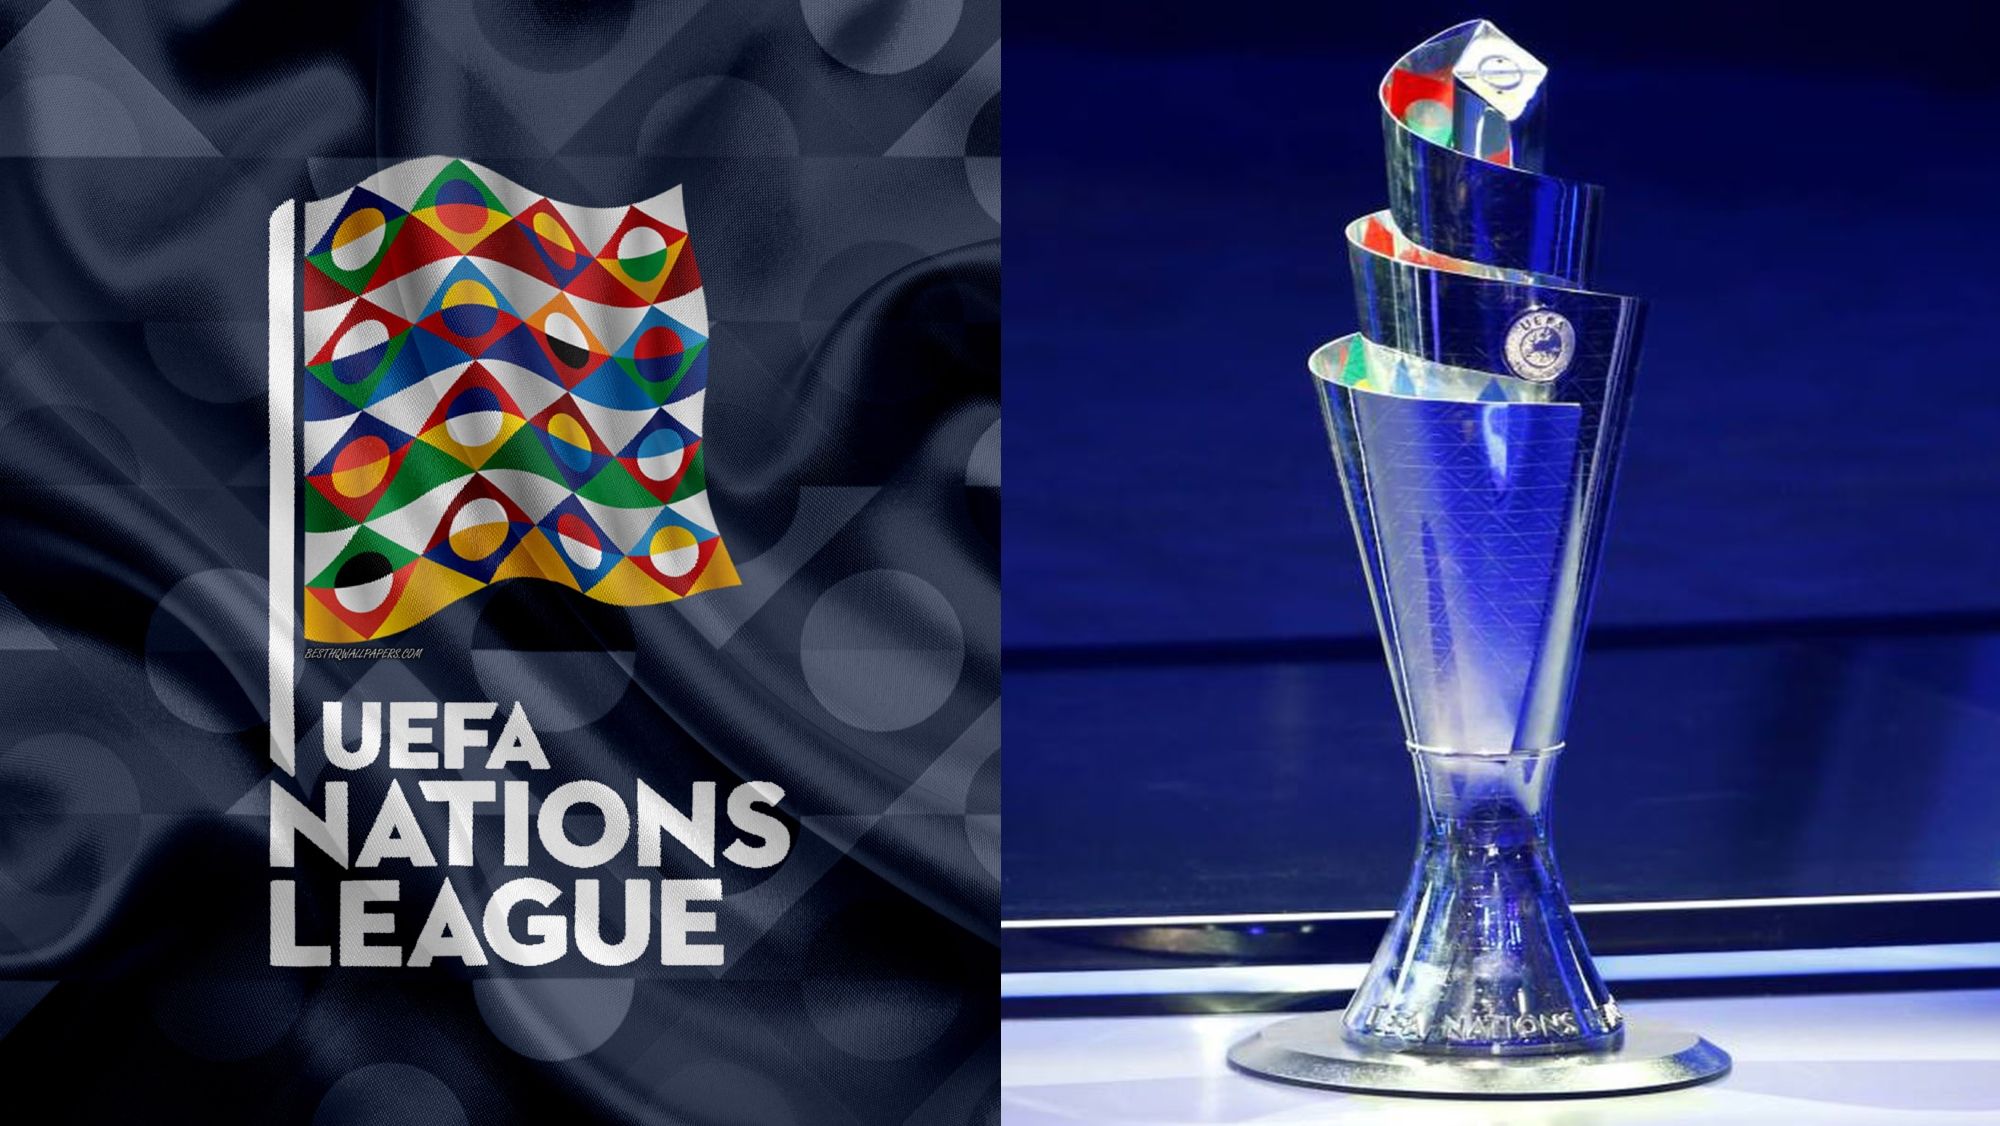 La bandera y el trofeo de la UEFA Nations League